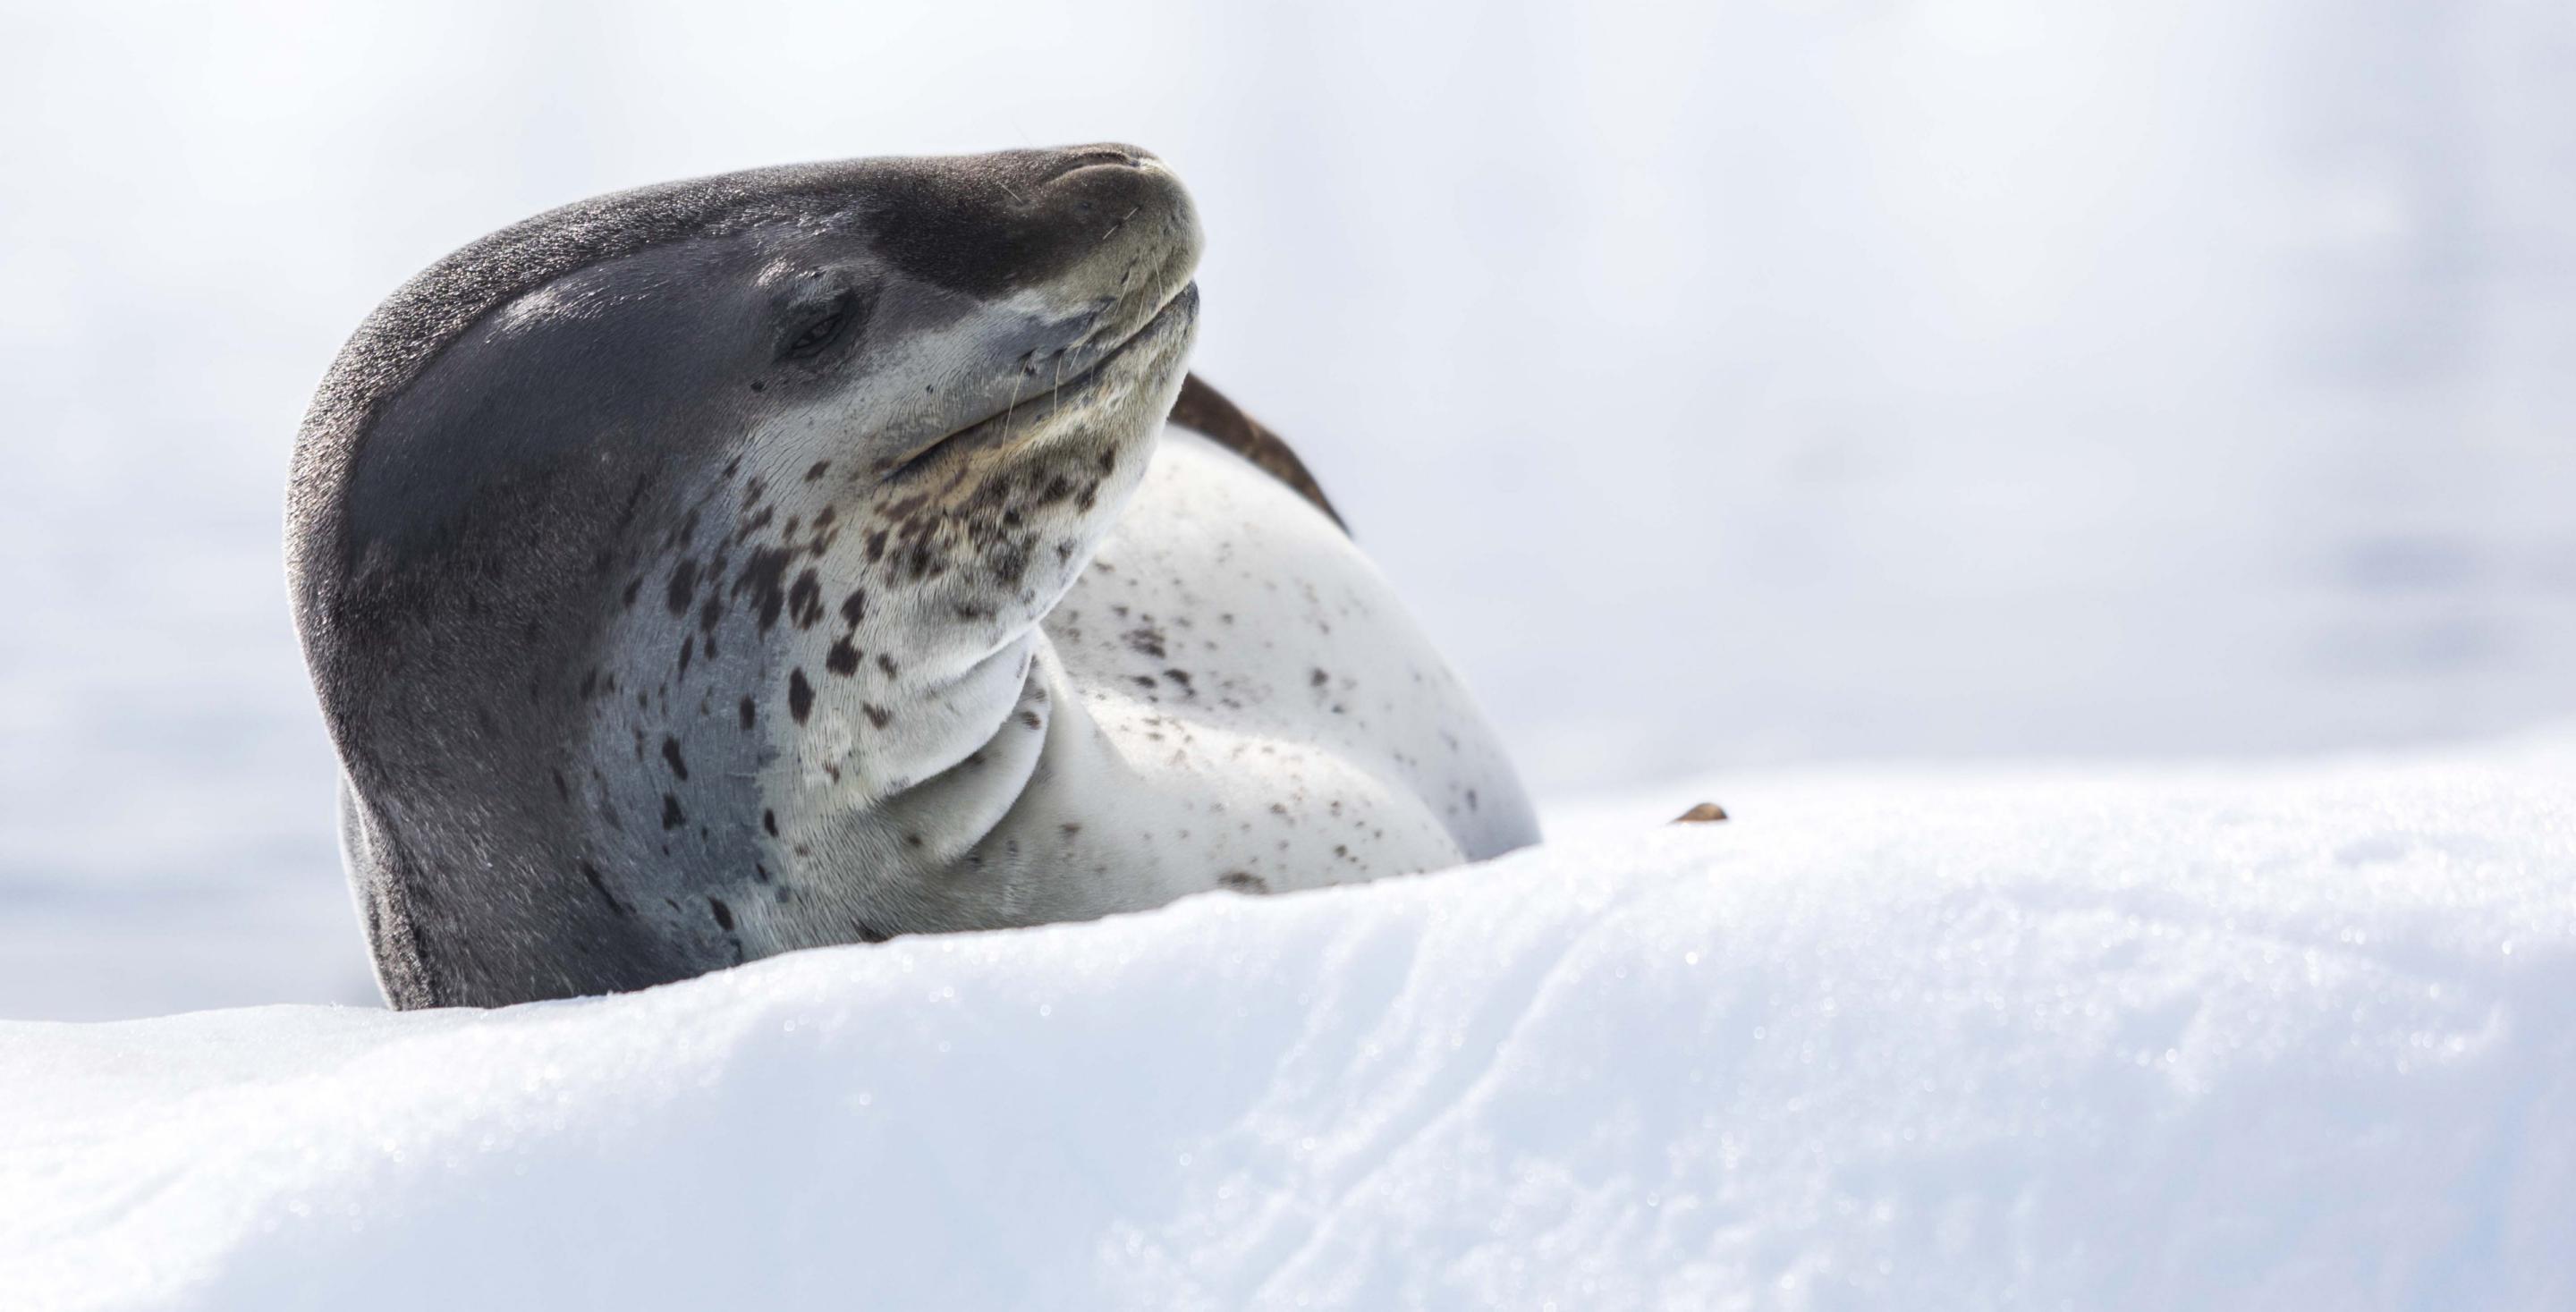 léopard de mer (hydrurga leptonyx) - Péninsule Antarctique